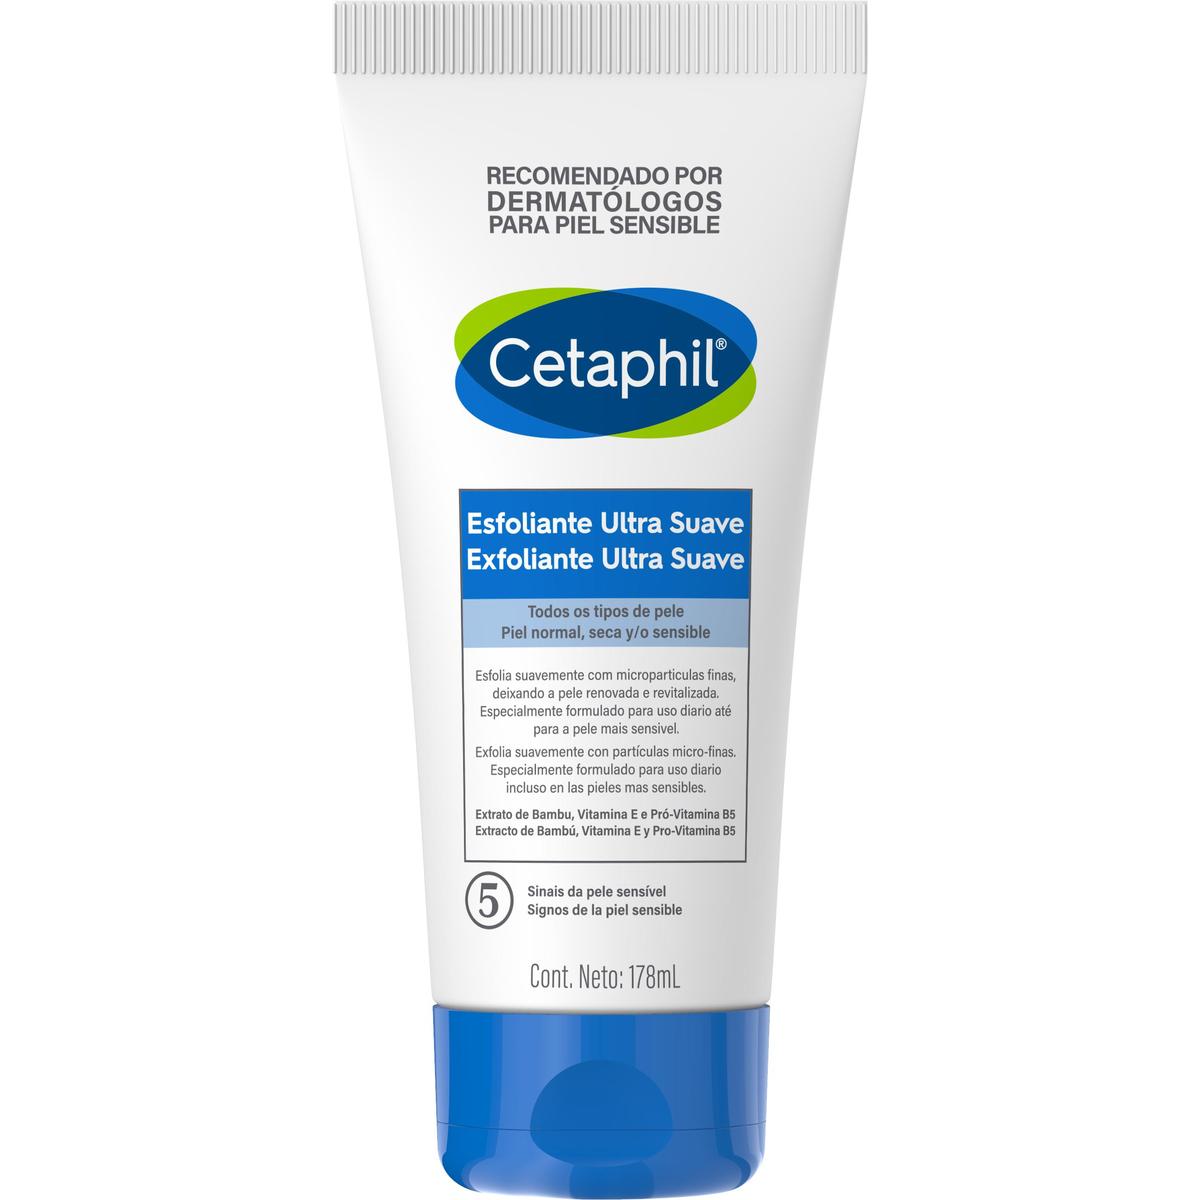 Cetaphil, Exfoliante diario ultra suave, 178ml